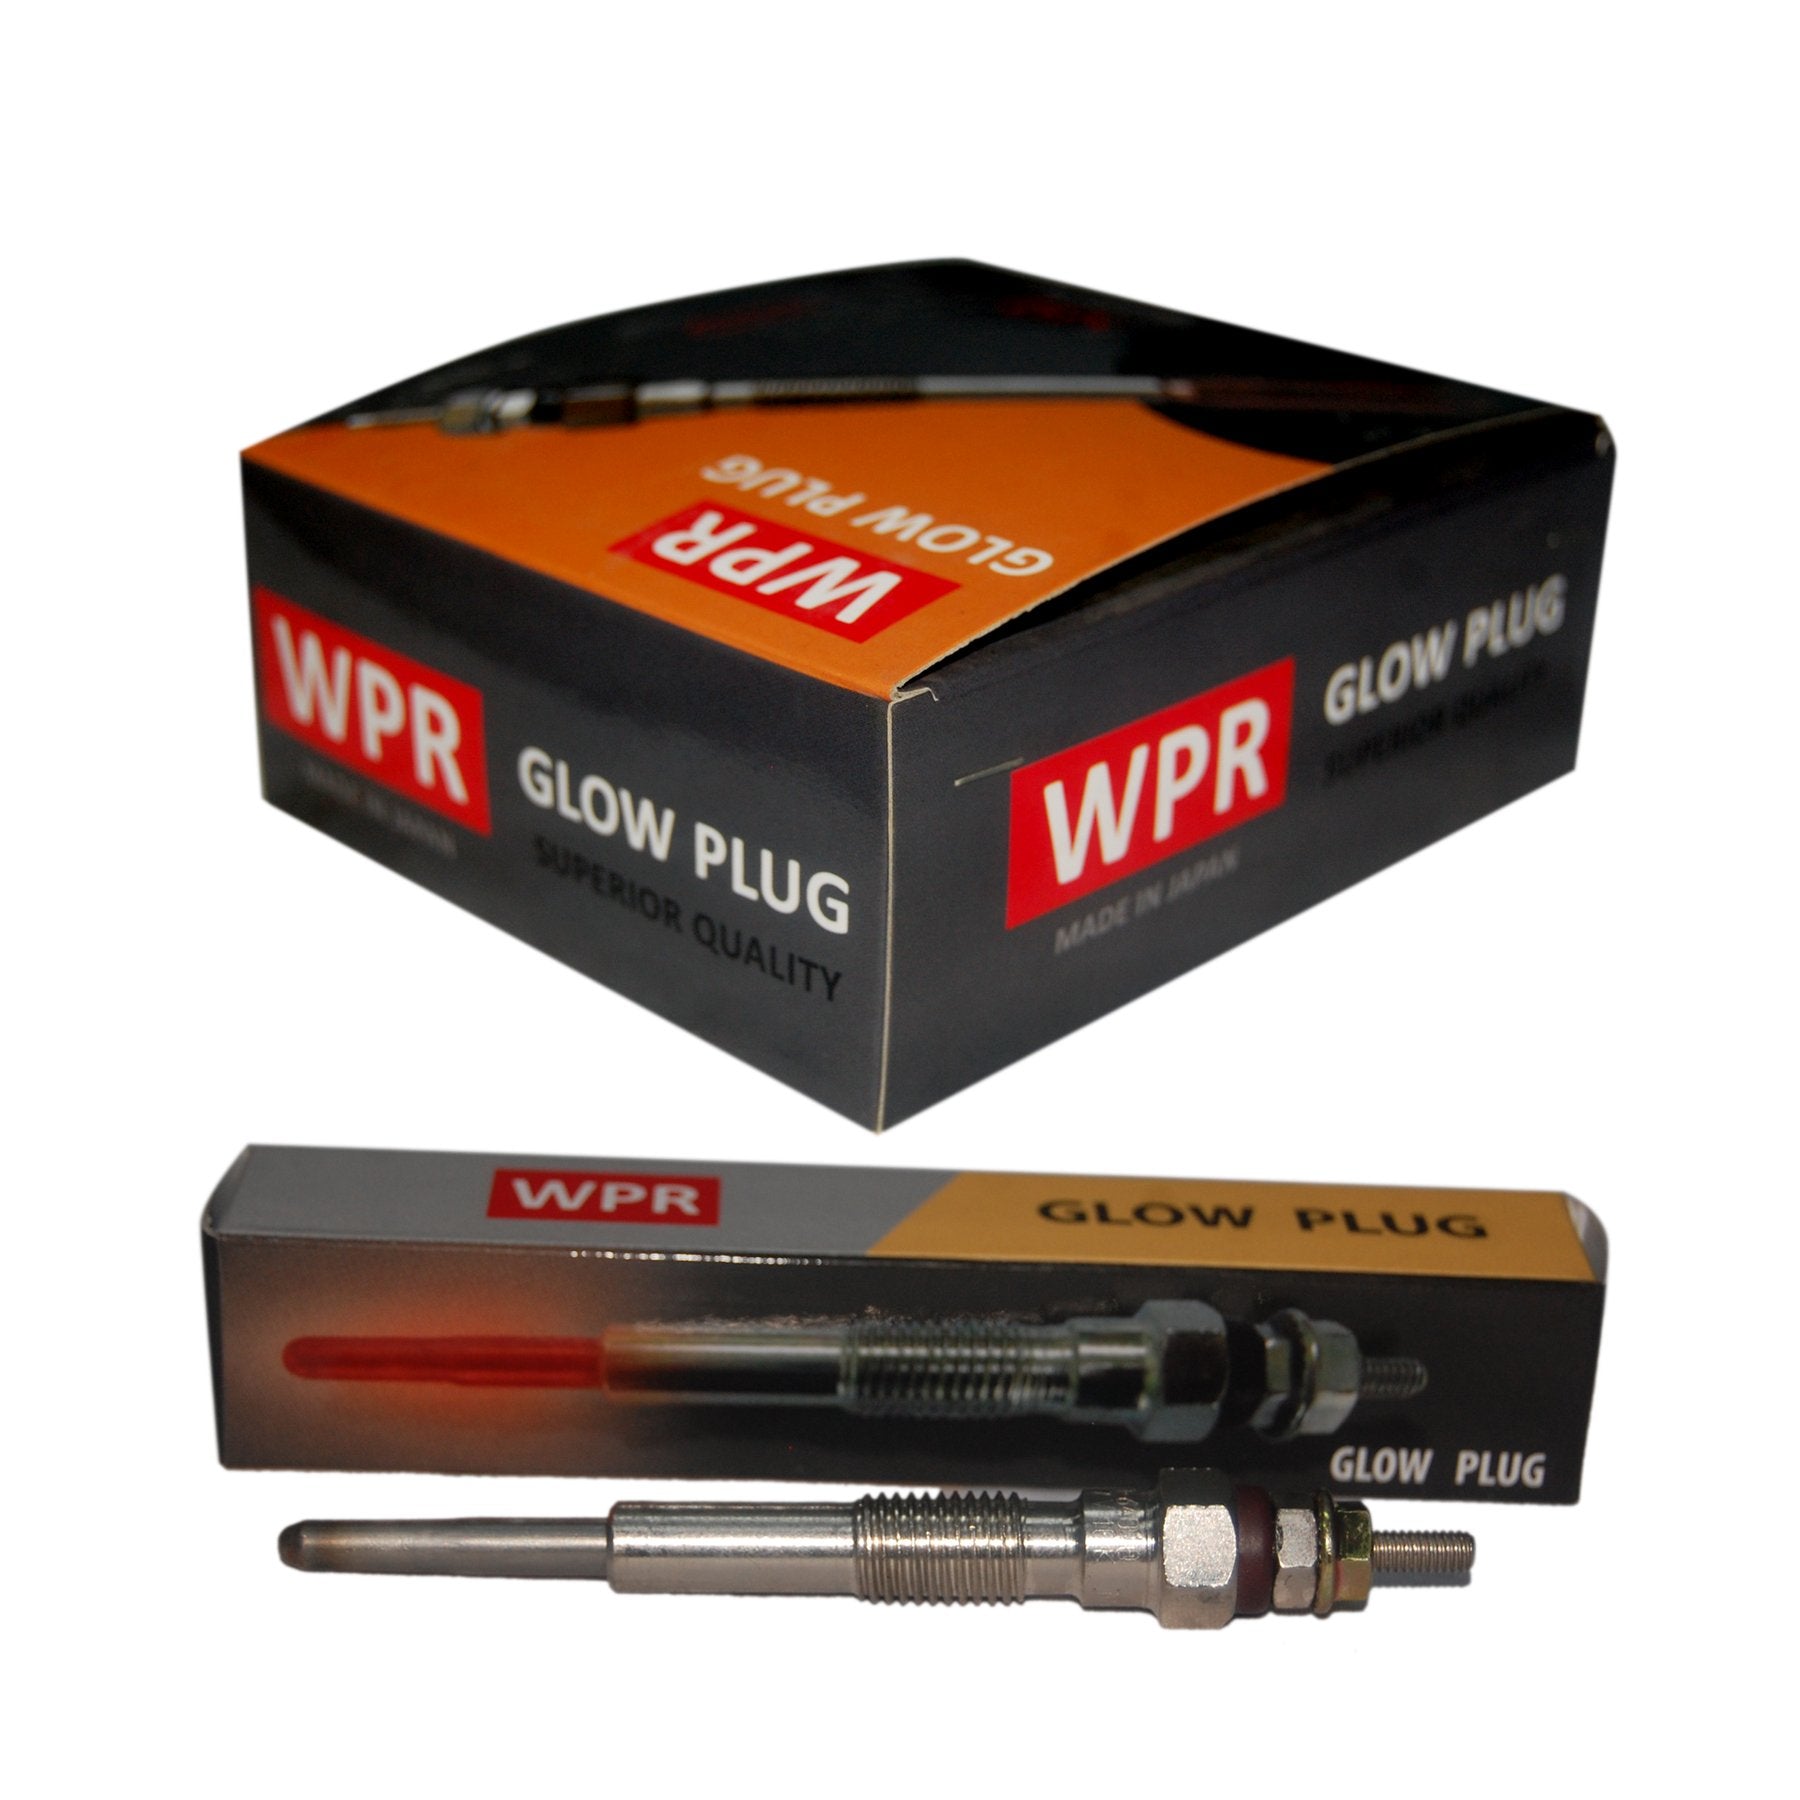 Glow Plug, WPR, CP-22 (007083) - Win Store